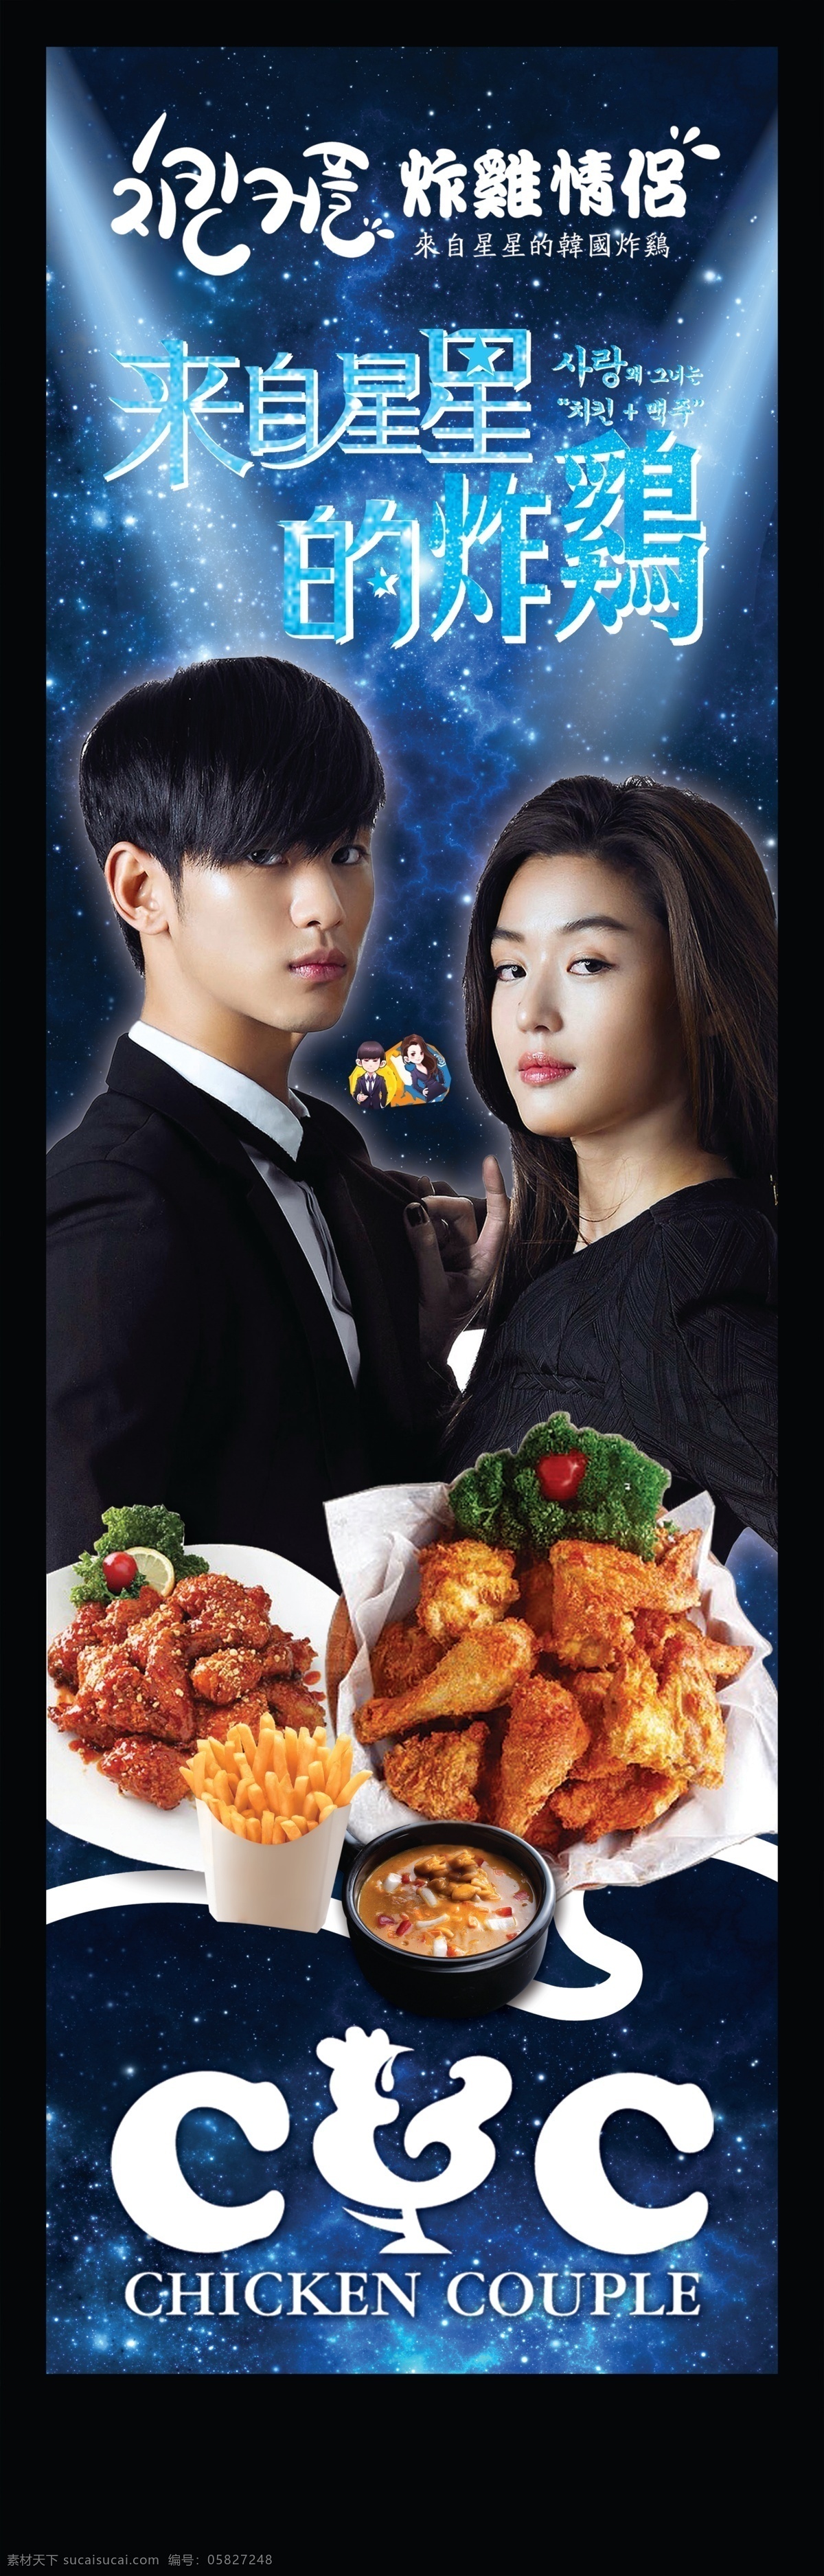 韩国炸鸡海报 来自星星的你 主题派对 韩国 炸鸡 啤酒 酒吧 派对